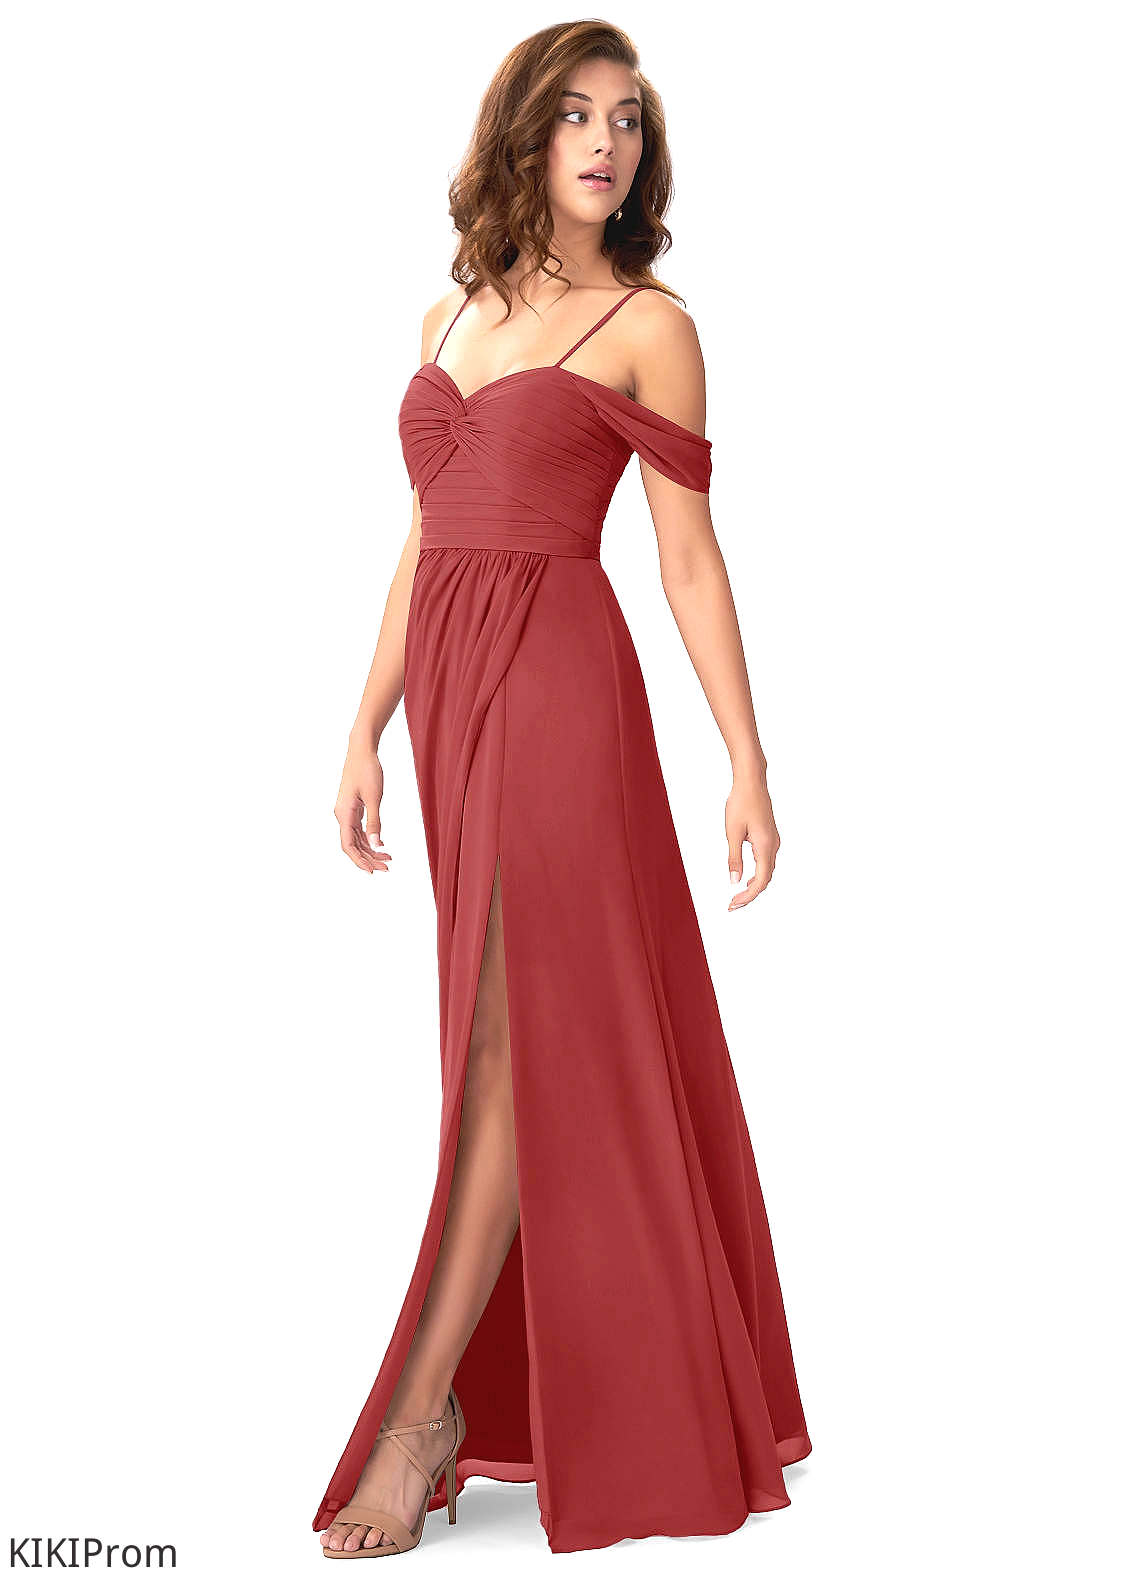 Raelynn Sheath/Column Spaghetti Staps High Low Sleeveless Natural Waist Bridesmaid Dresses